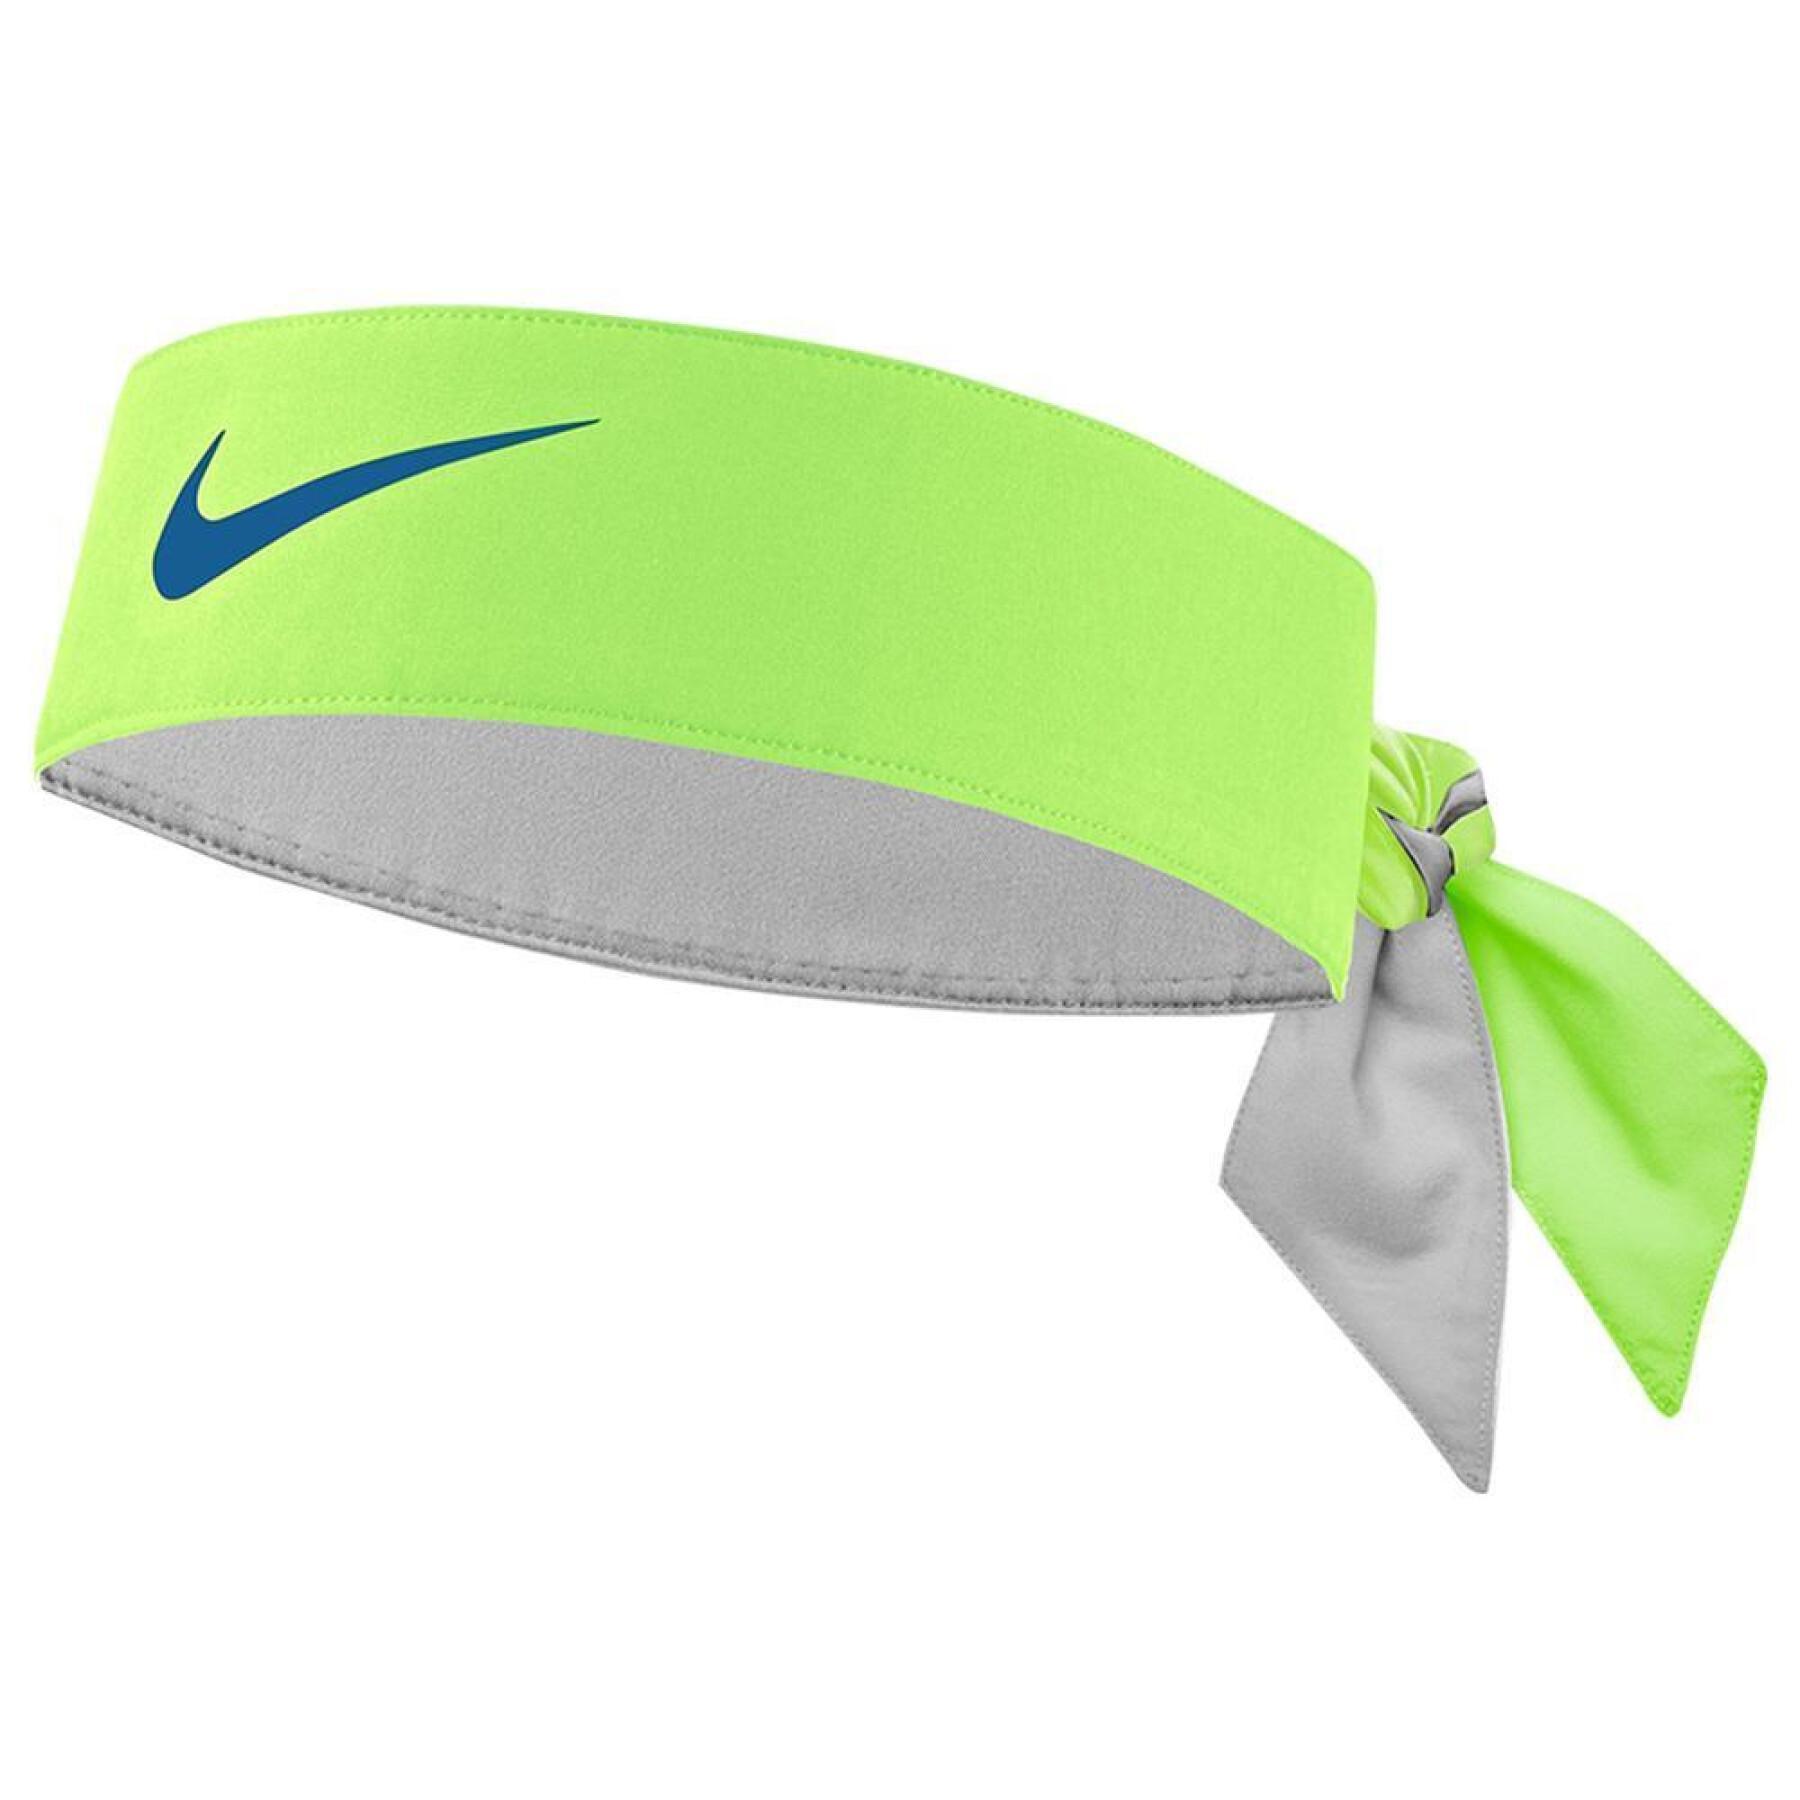 Cinta para la cabeza Nike tennis premier Nadal